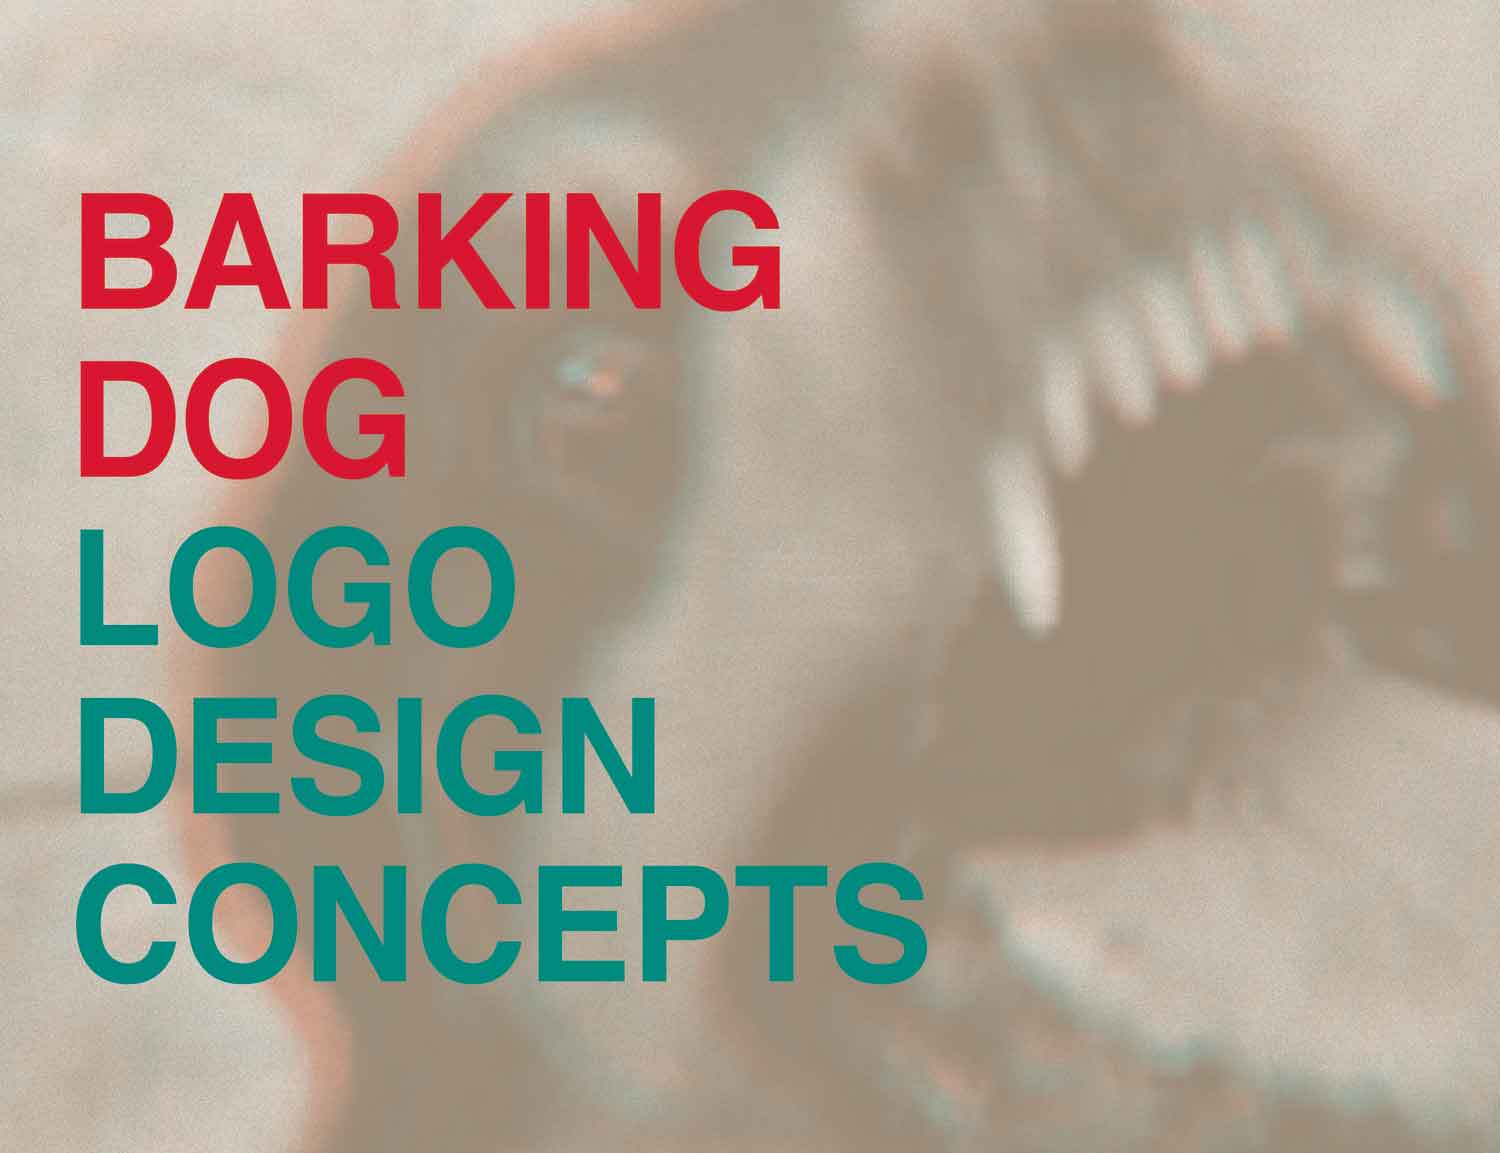 Barking Dog Logo - Aramazt Kalayjian Works // Barking Dog Logo Concepts